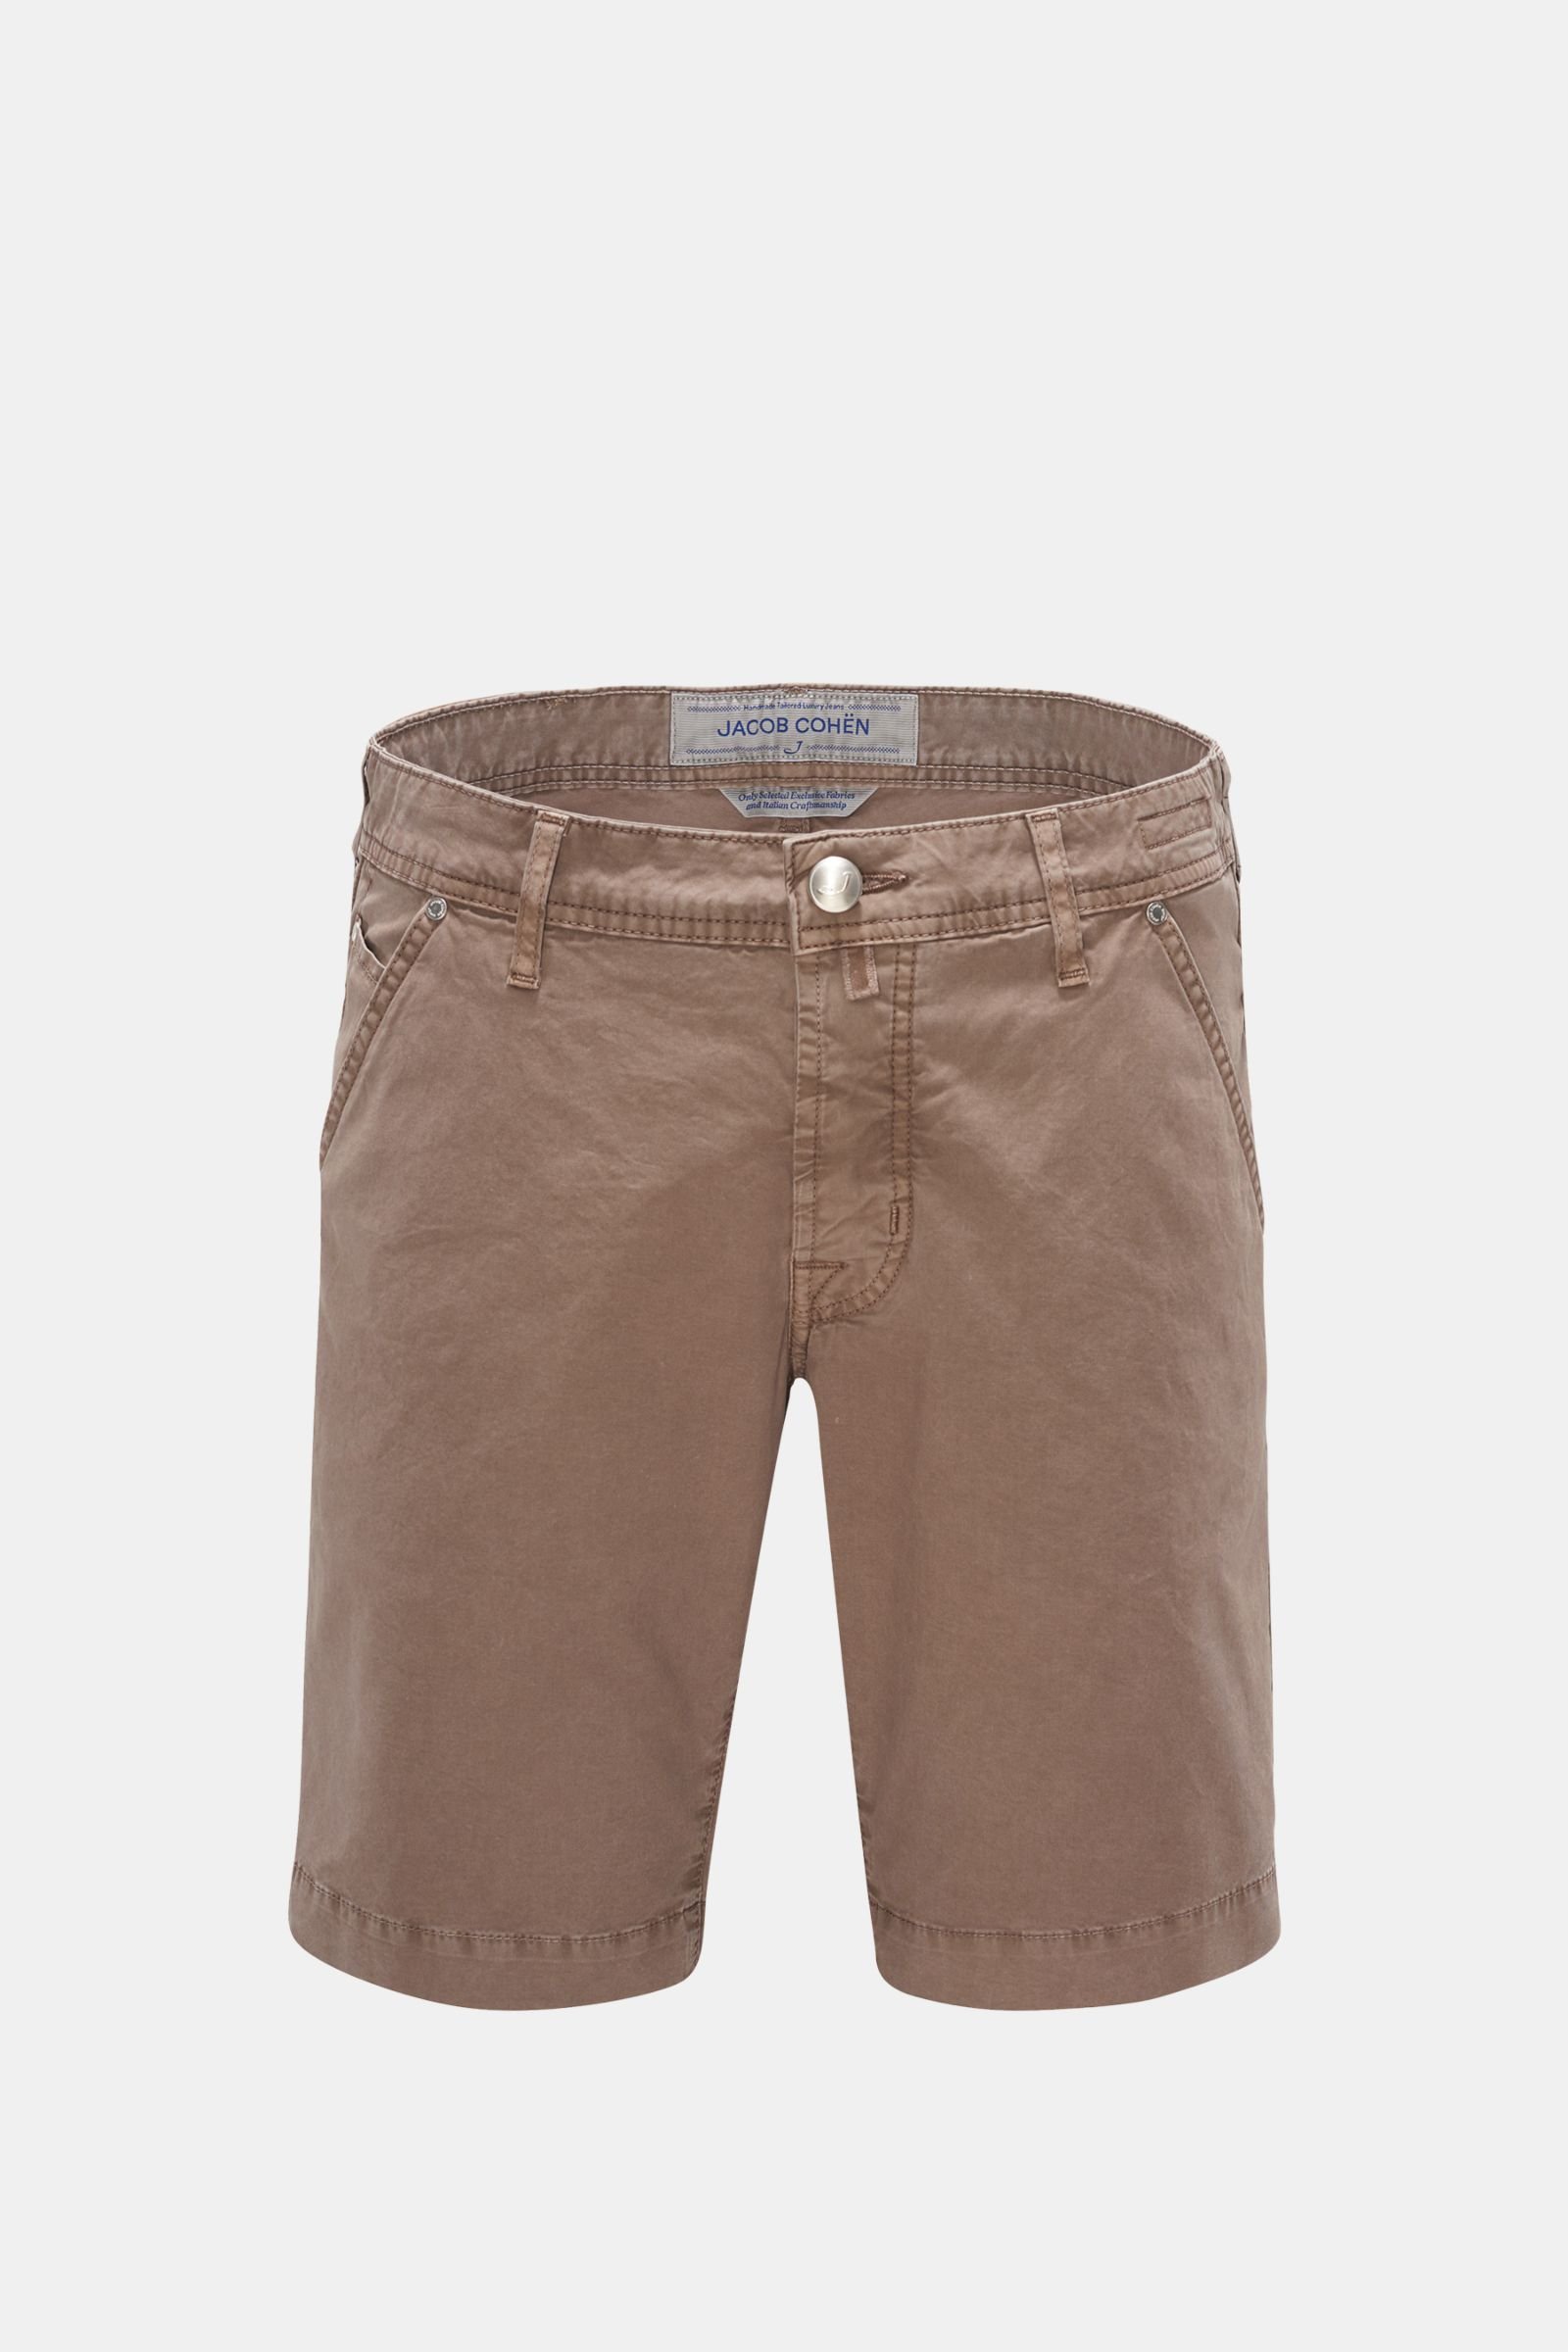 Bermuda shorts 'J6613 Comfort Slim Fit' grey-brown